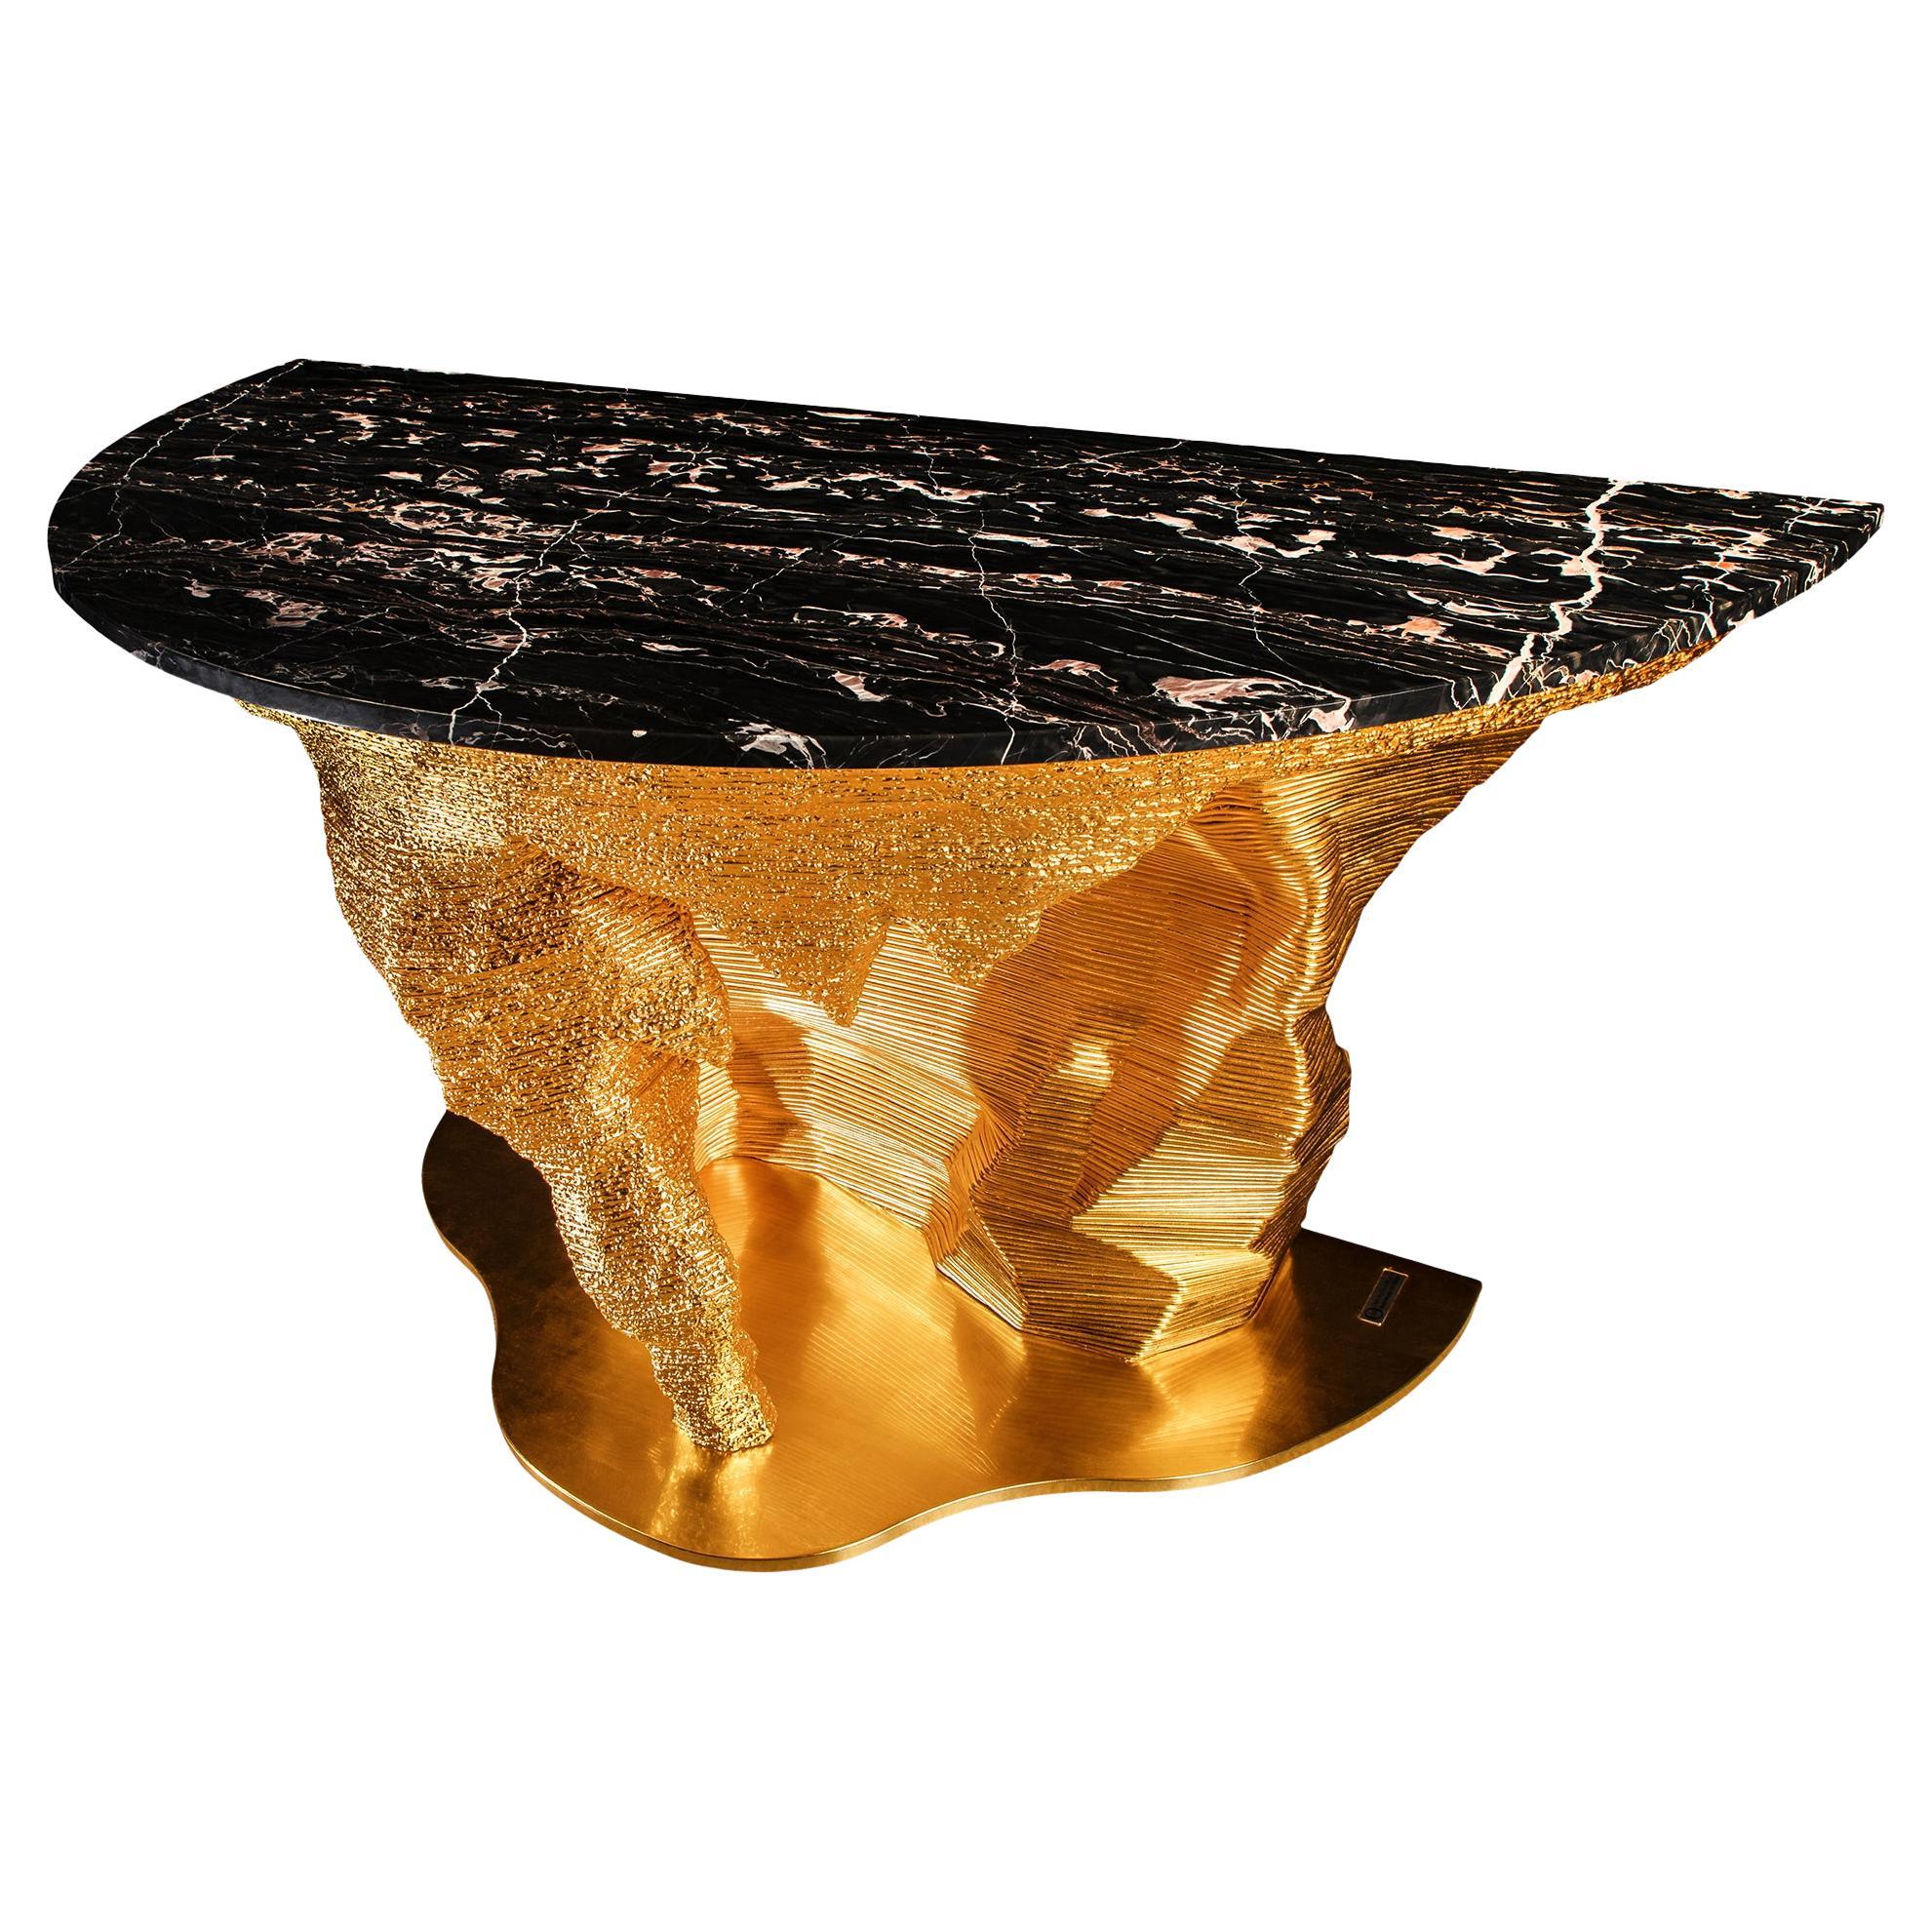 Marbre Portoro "GoldMoon Meteorite" design by GiòPozzi for Officina della Scala